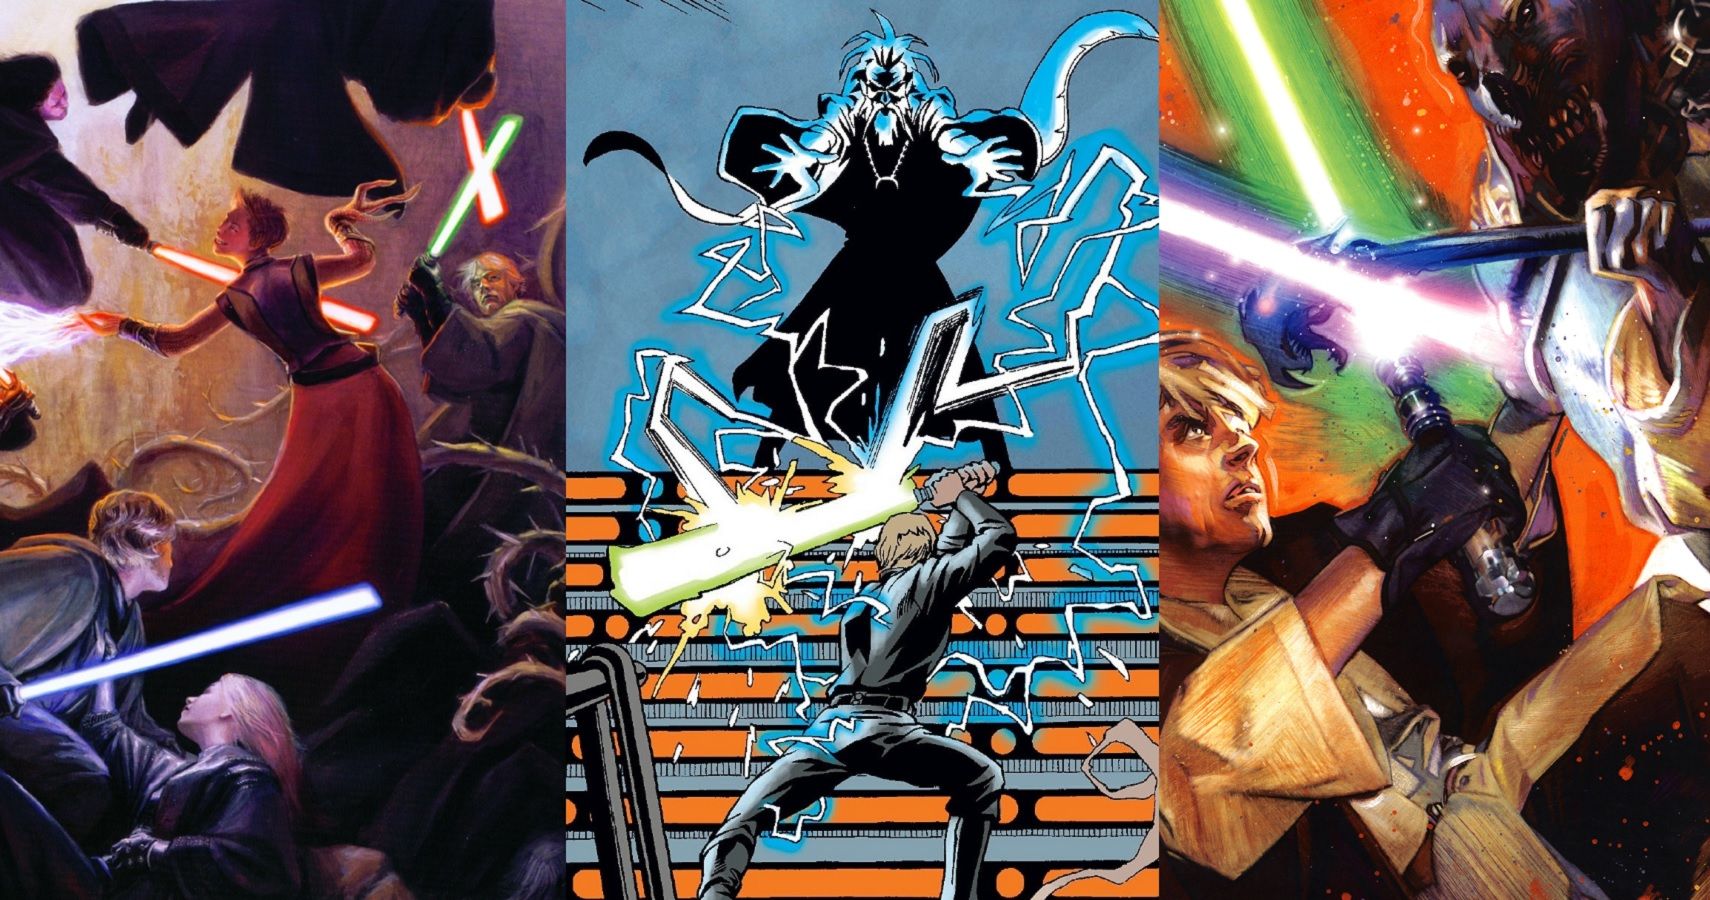 Jedi Luke Skywalker fighting powerful enemies at various stages of his career.